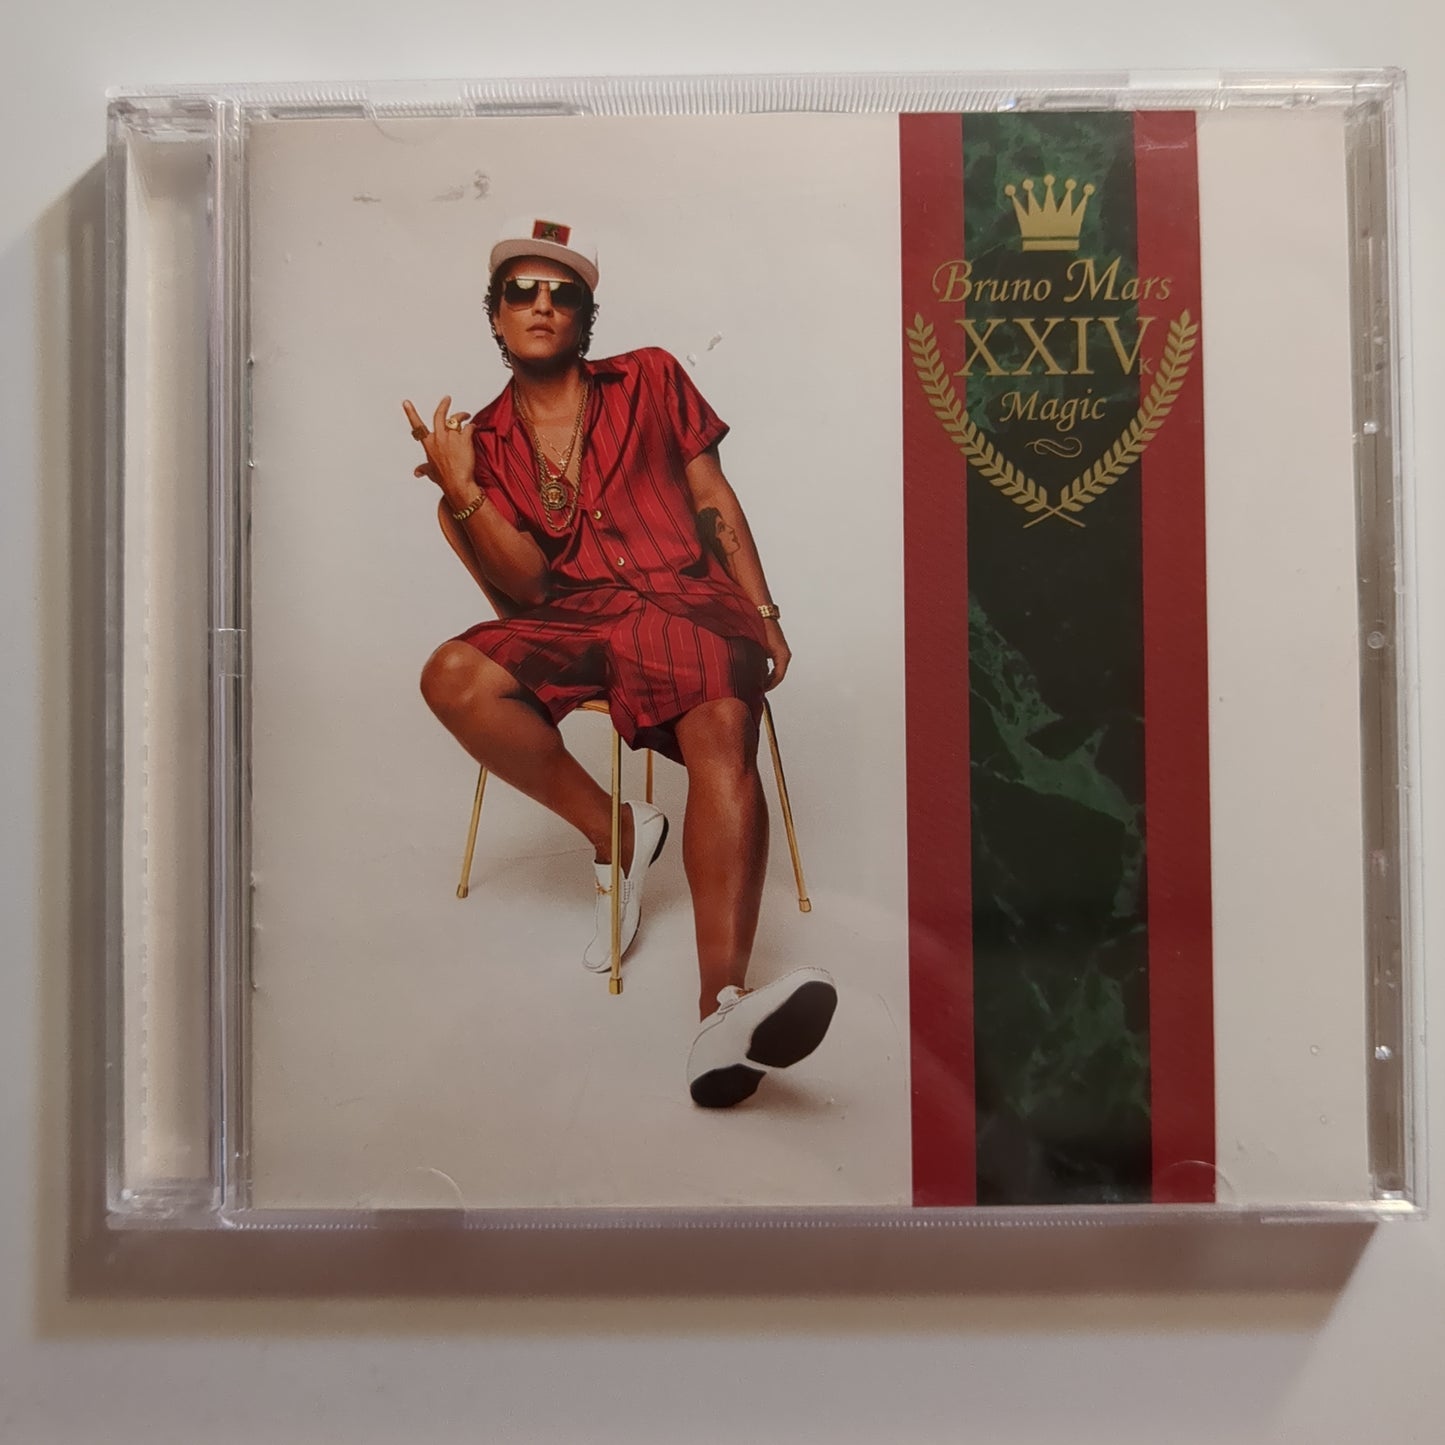 Bruno Mars - 'XXIVk Magia'